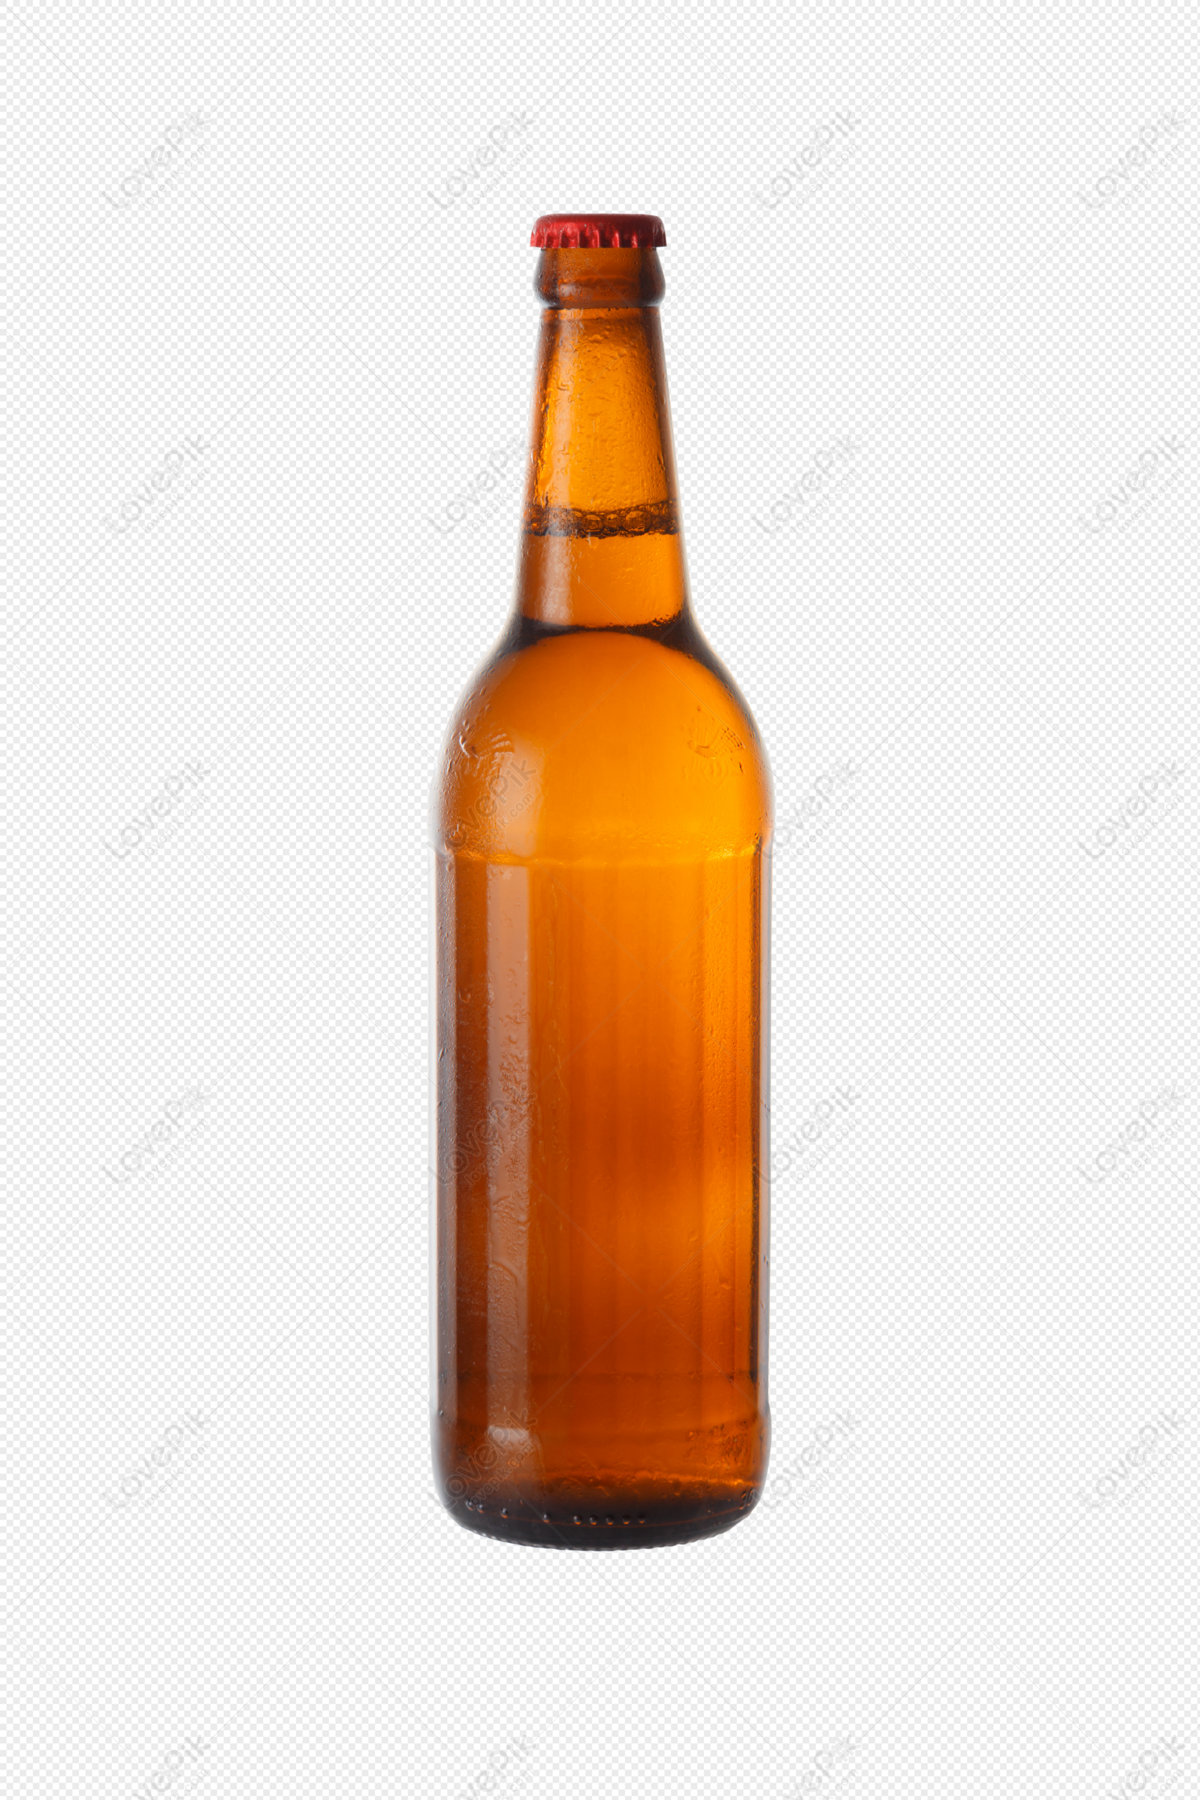 Beer bottle stock vector. Illustration of glass, bottle - 19760435